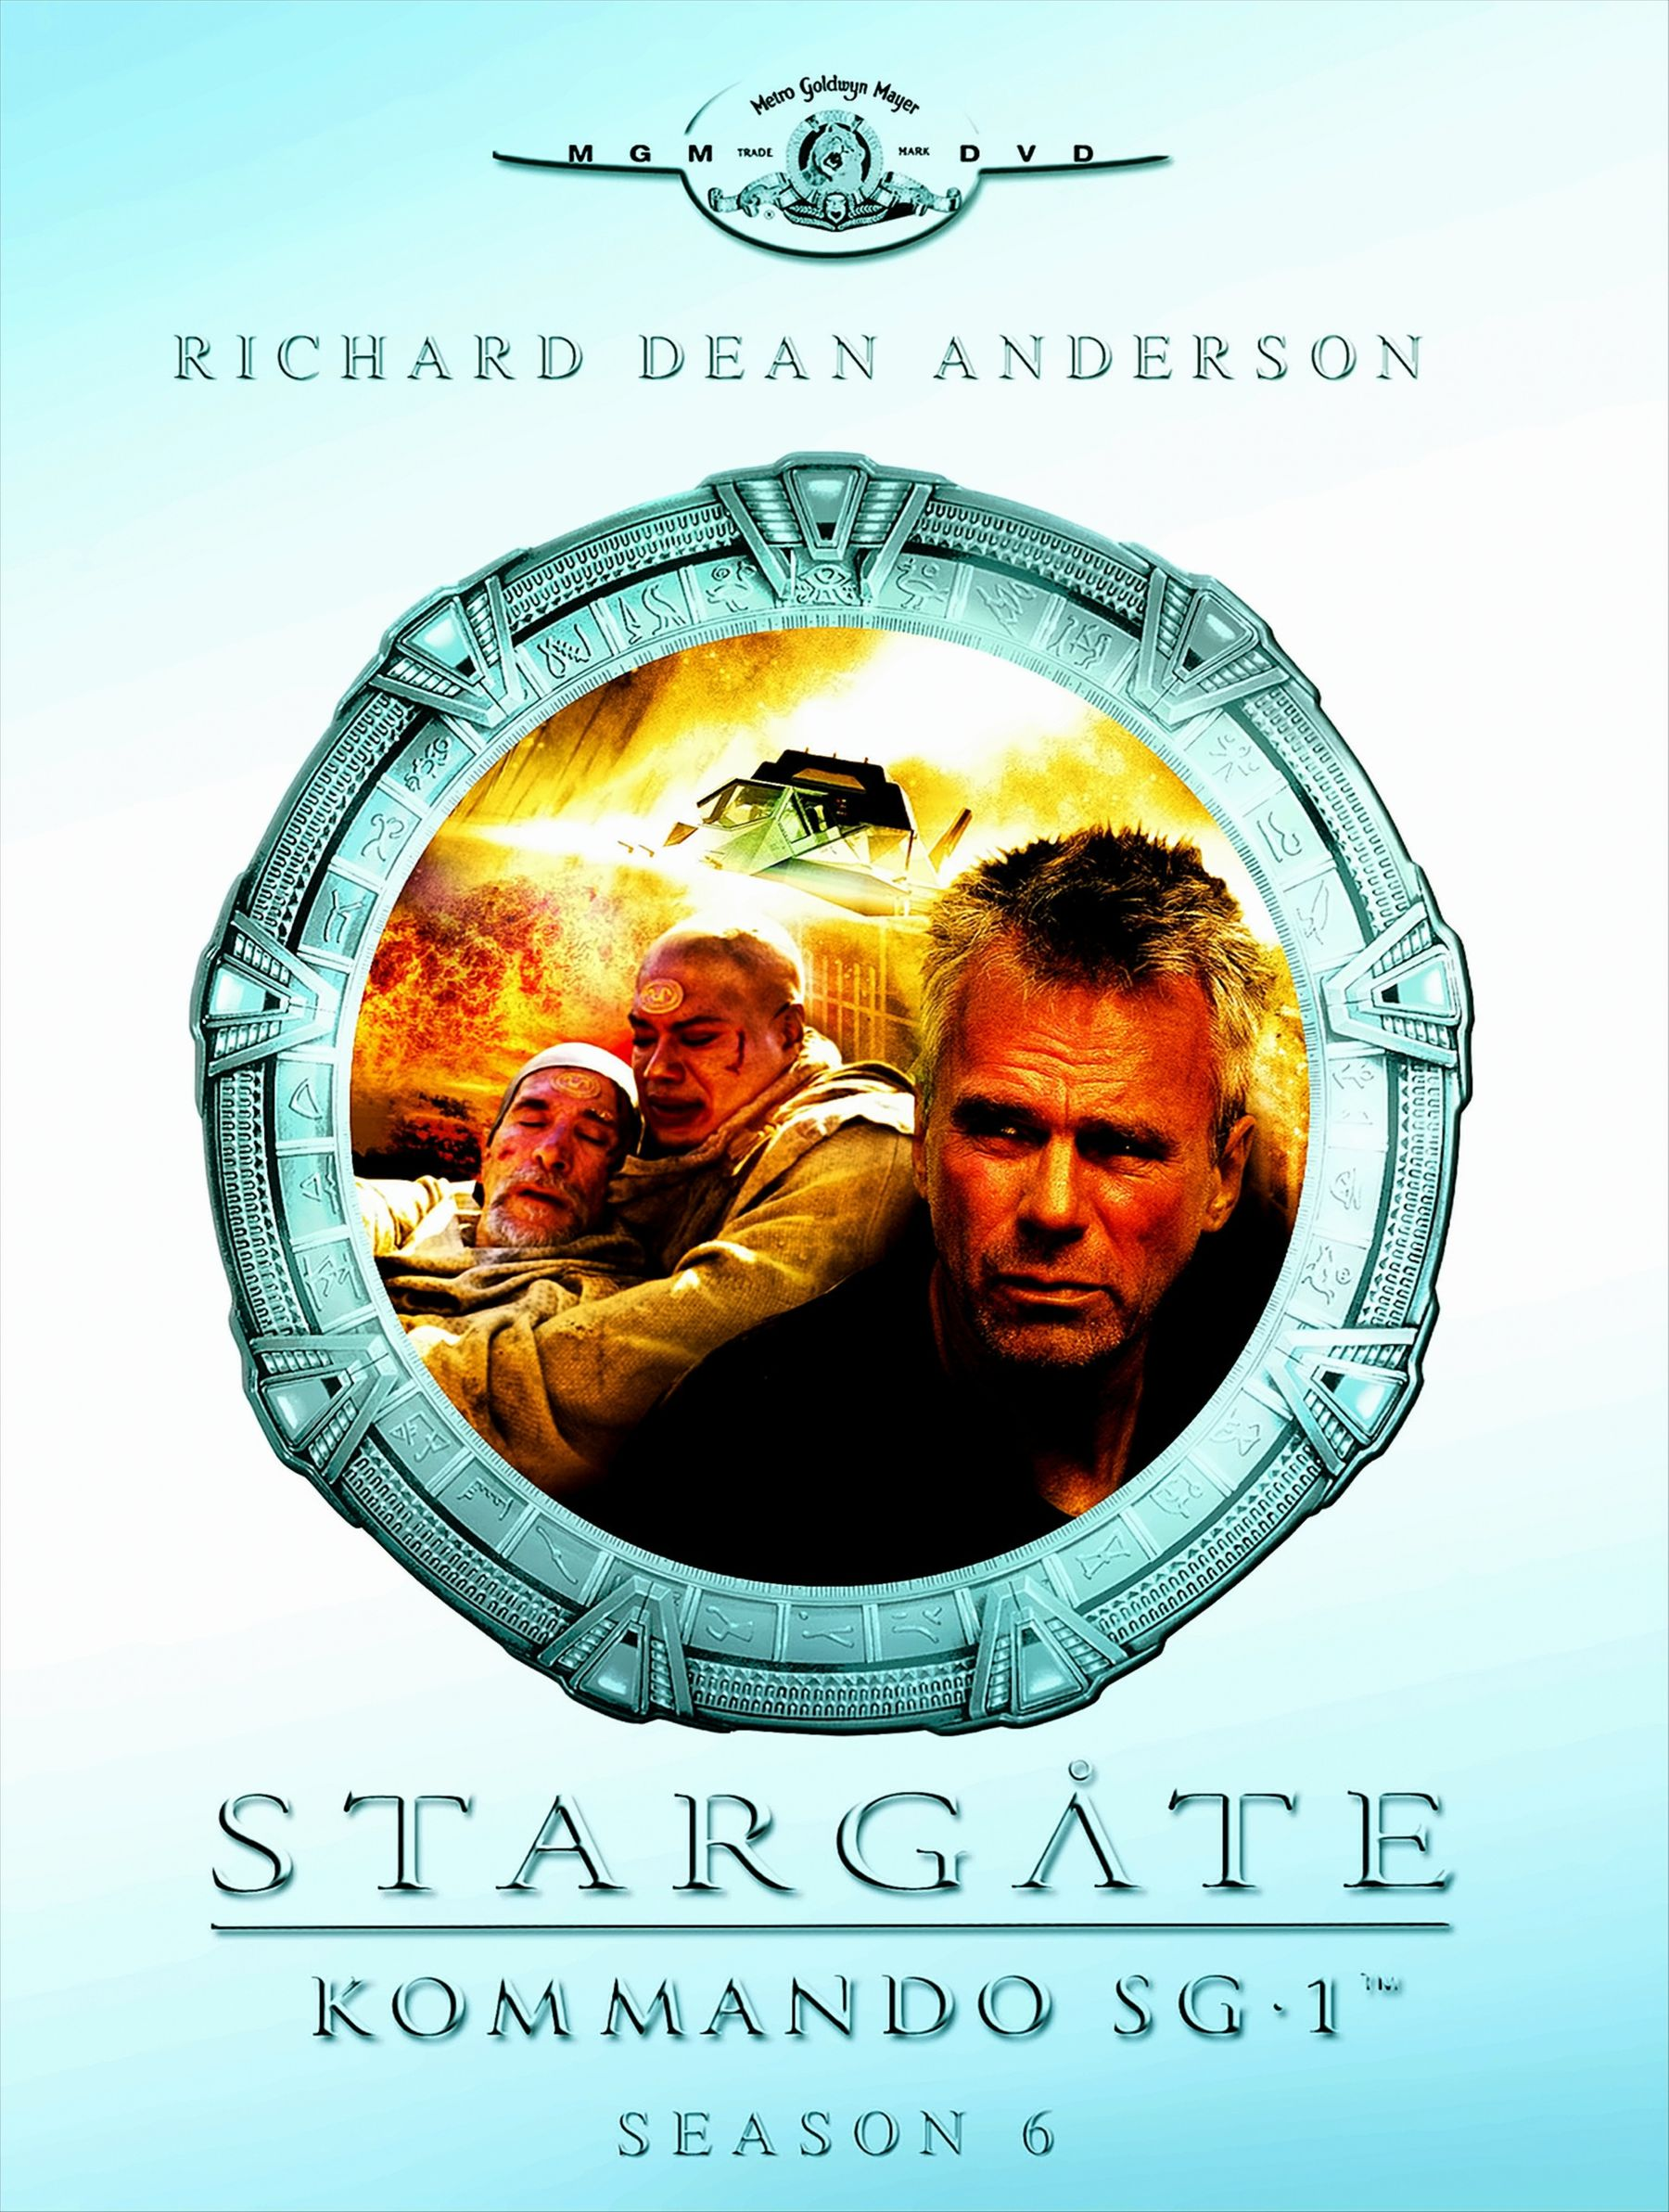 Stargate Kommando SG-1 - 06 Season DVD (6 DVDs)